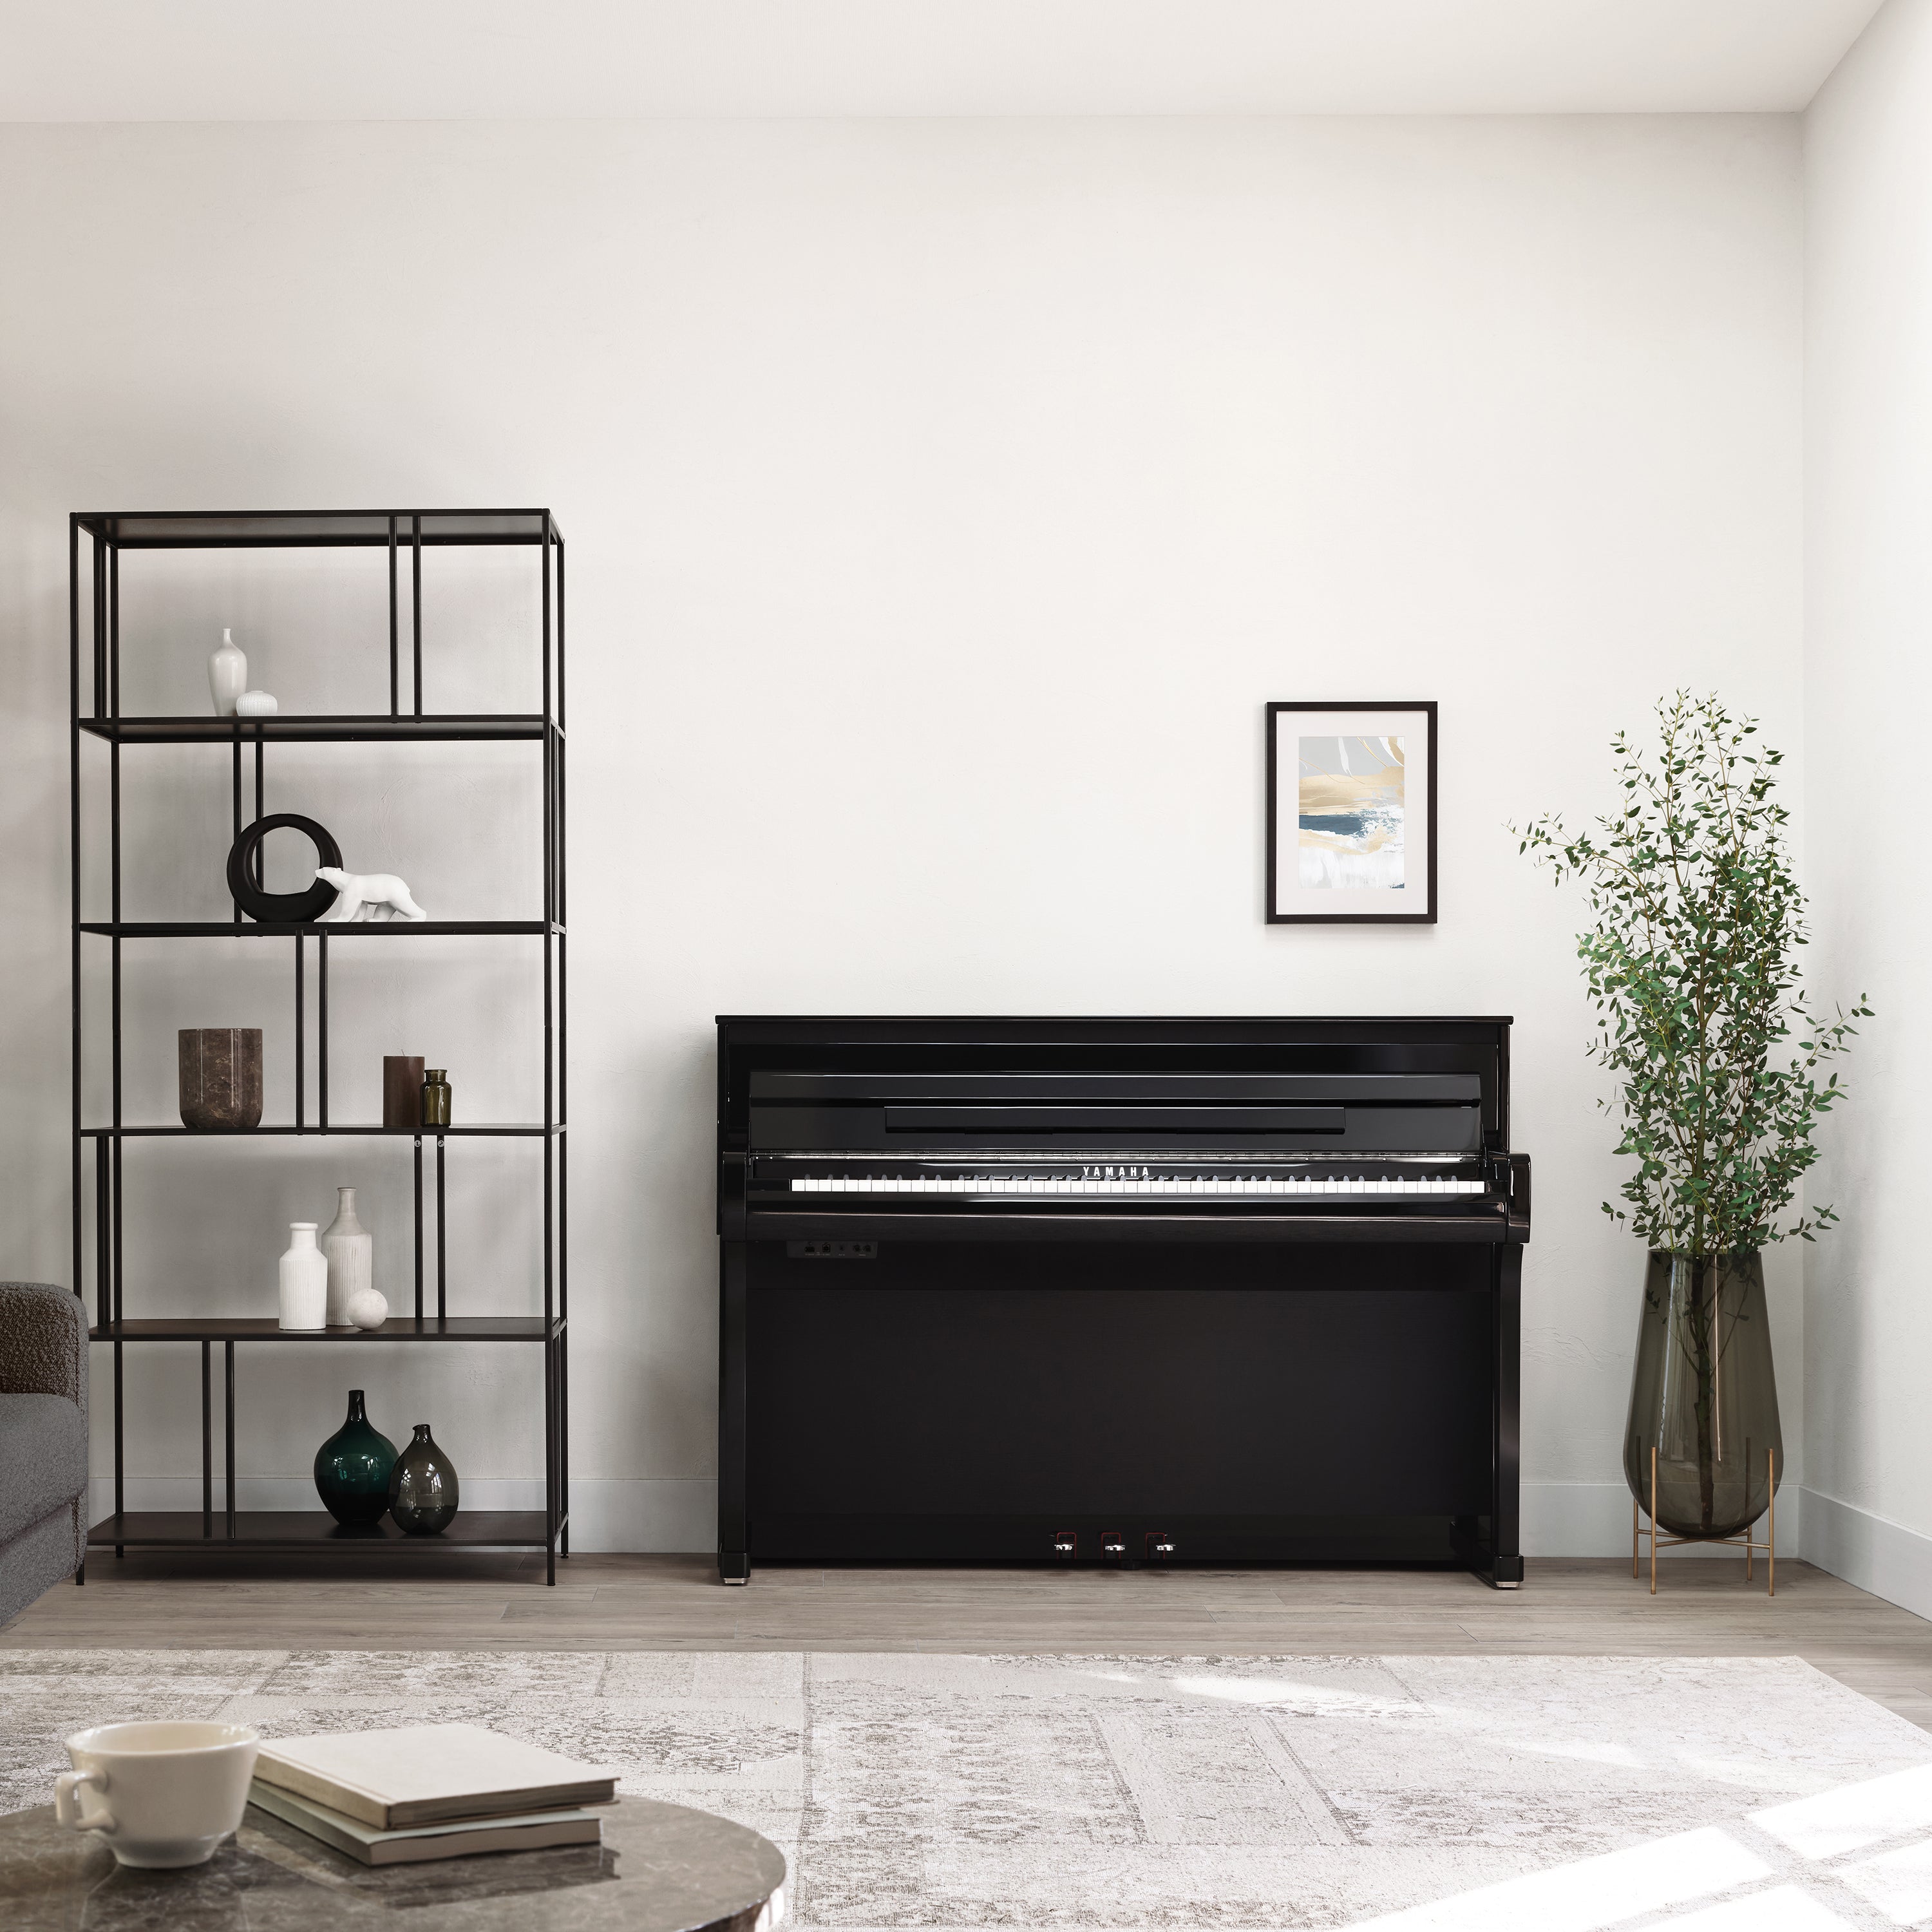 Yamaha Clavinova CLP-885 Digital Piano - Polished Ebony in a stylish room